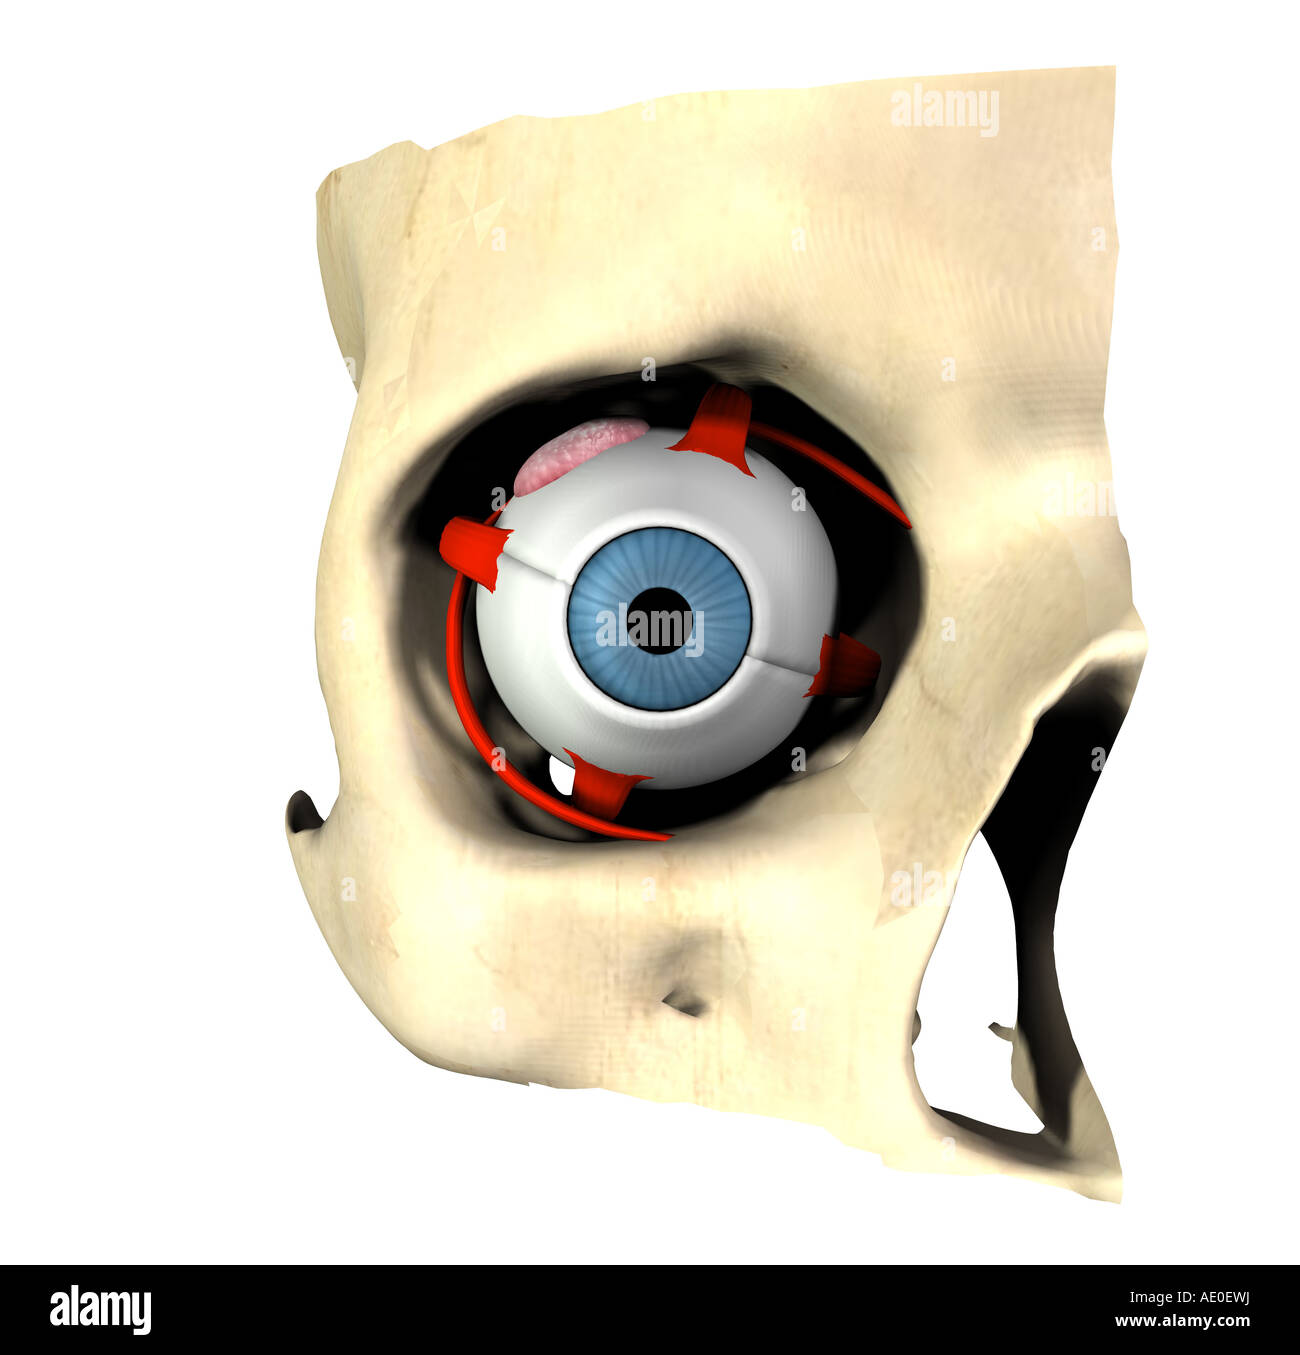 anatomy of the eye Stock Photo